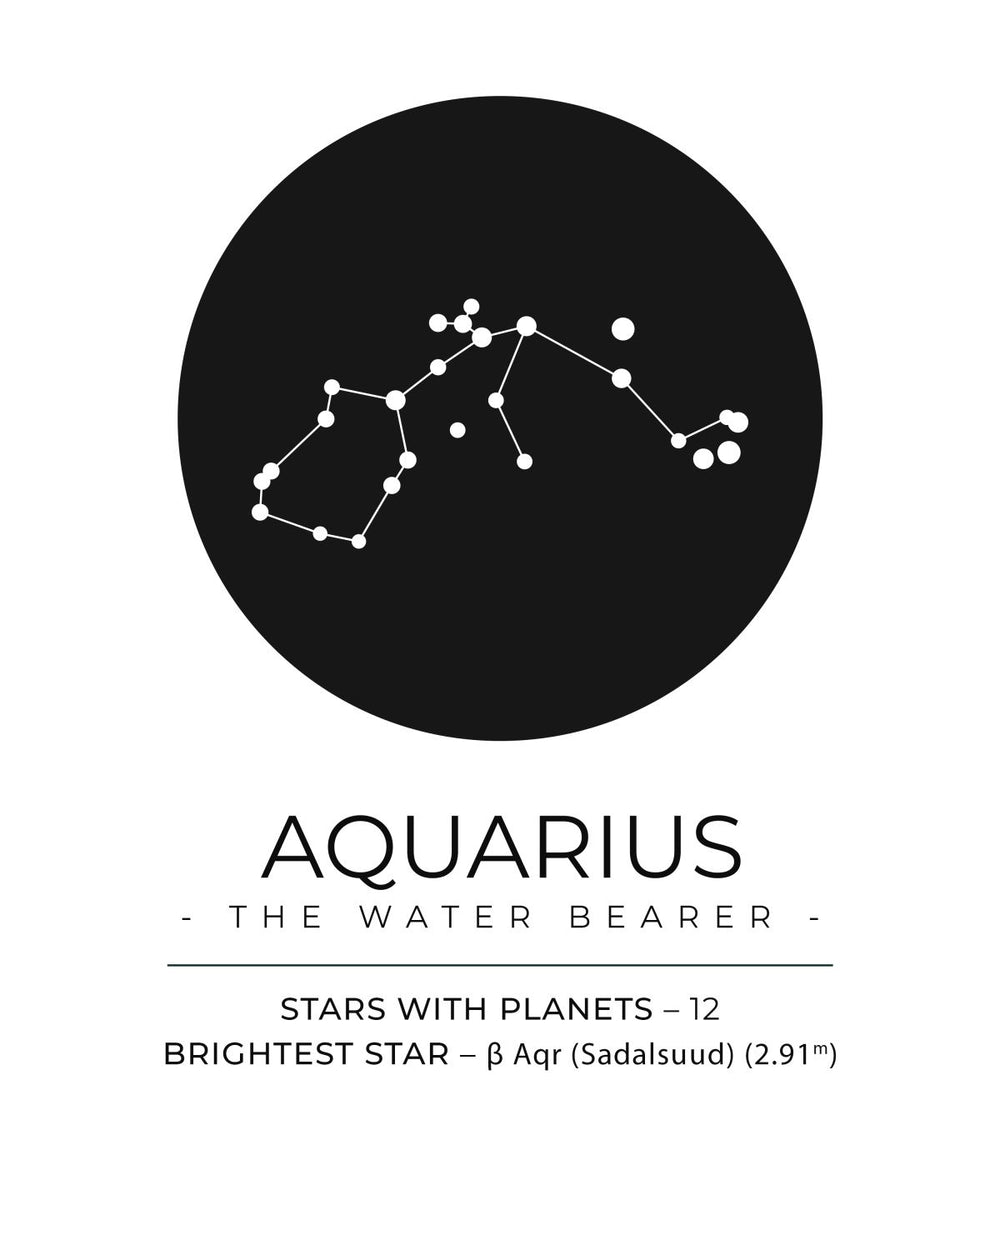 The Aquarius Constellation